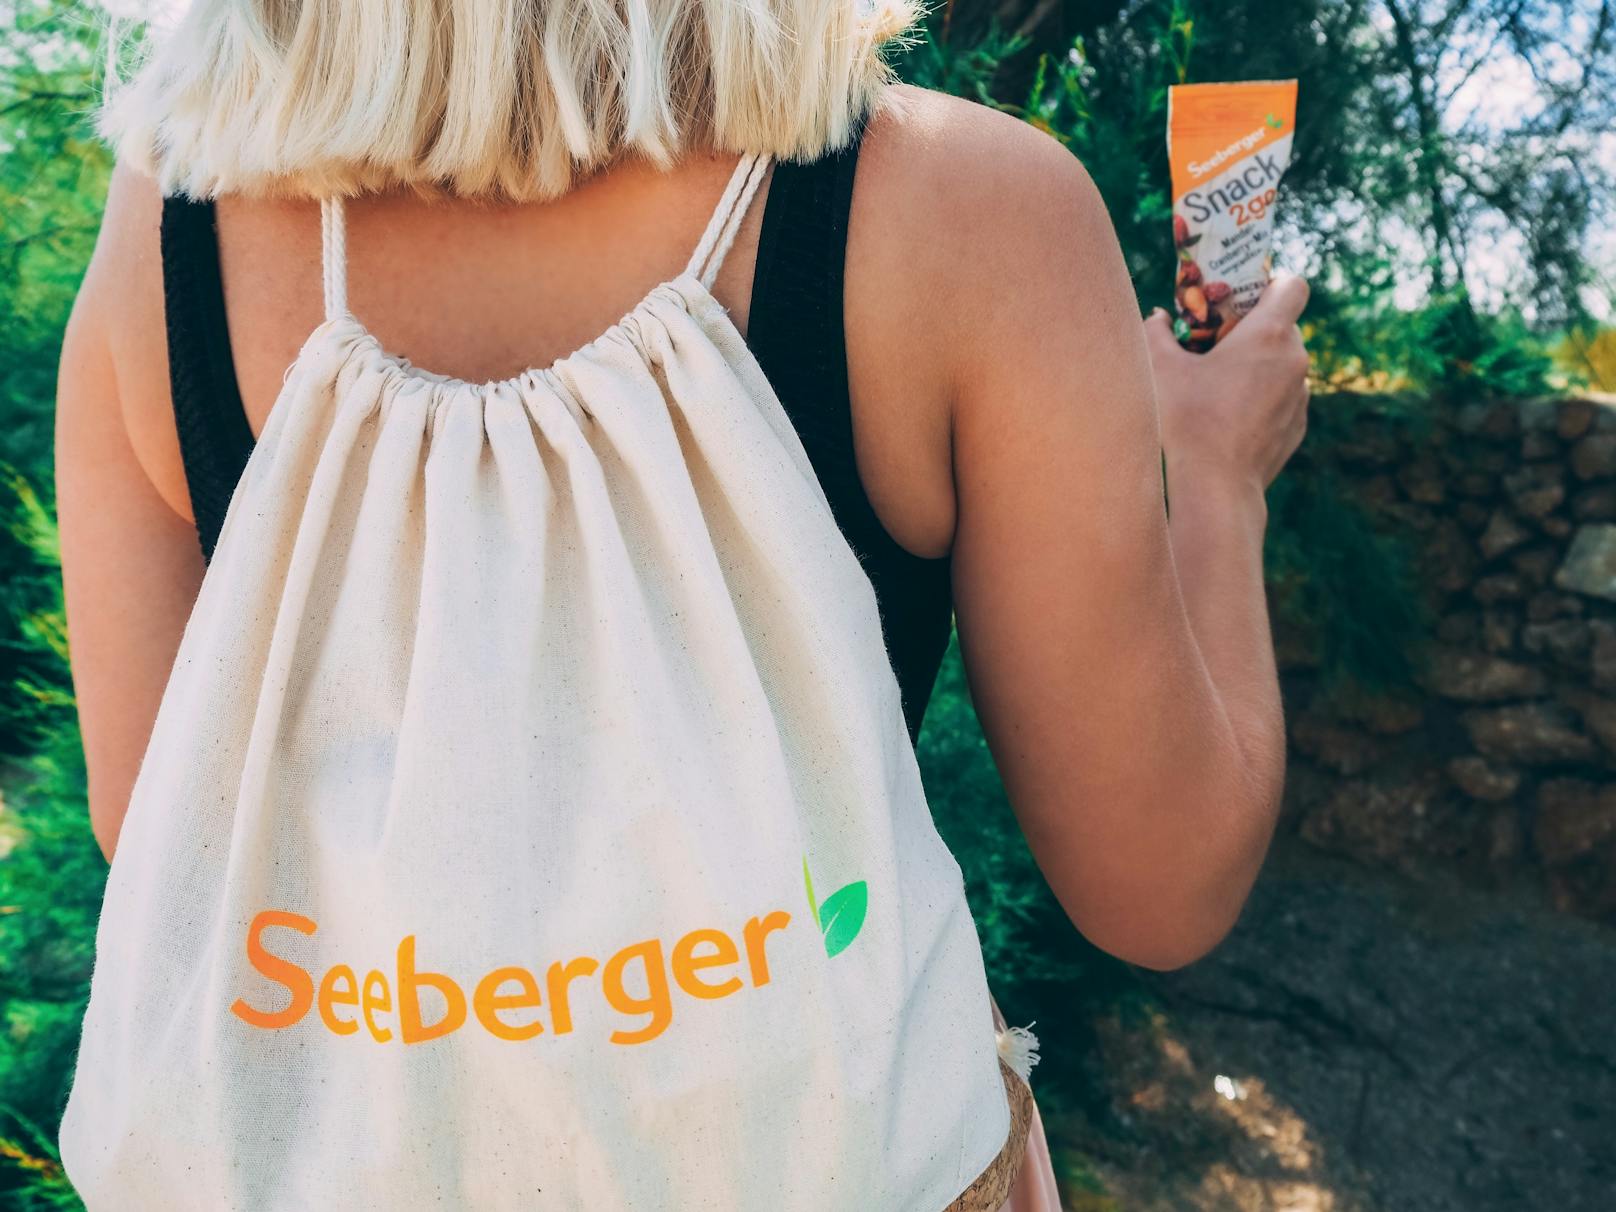 Jetzt teilnehmen und neue Produkte "Snack2go" sowie einen Turnbeutel von Seeberger gewinnen!